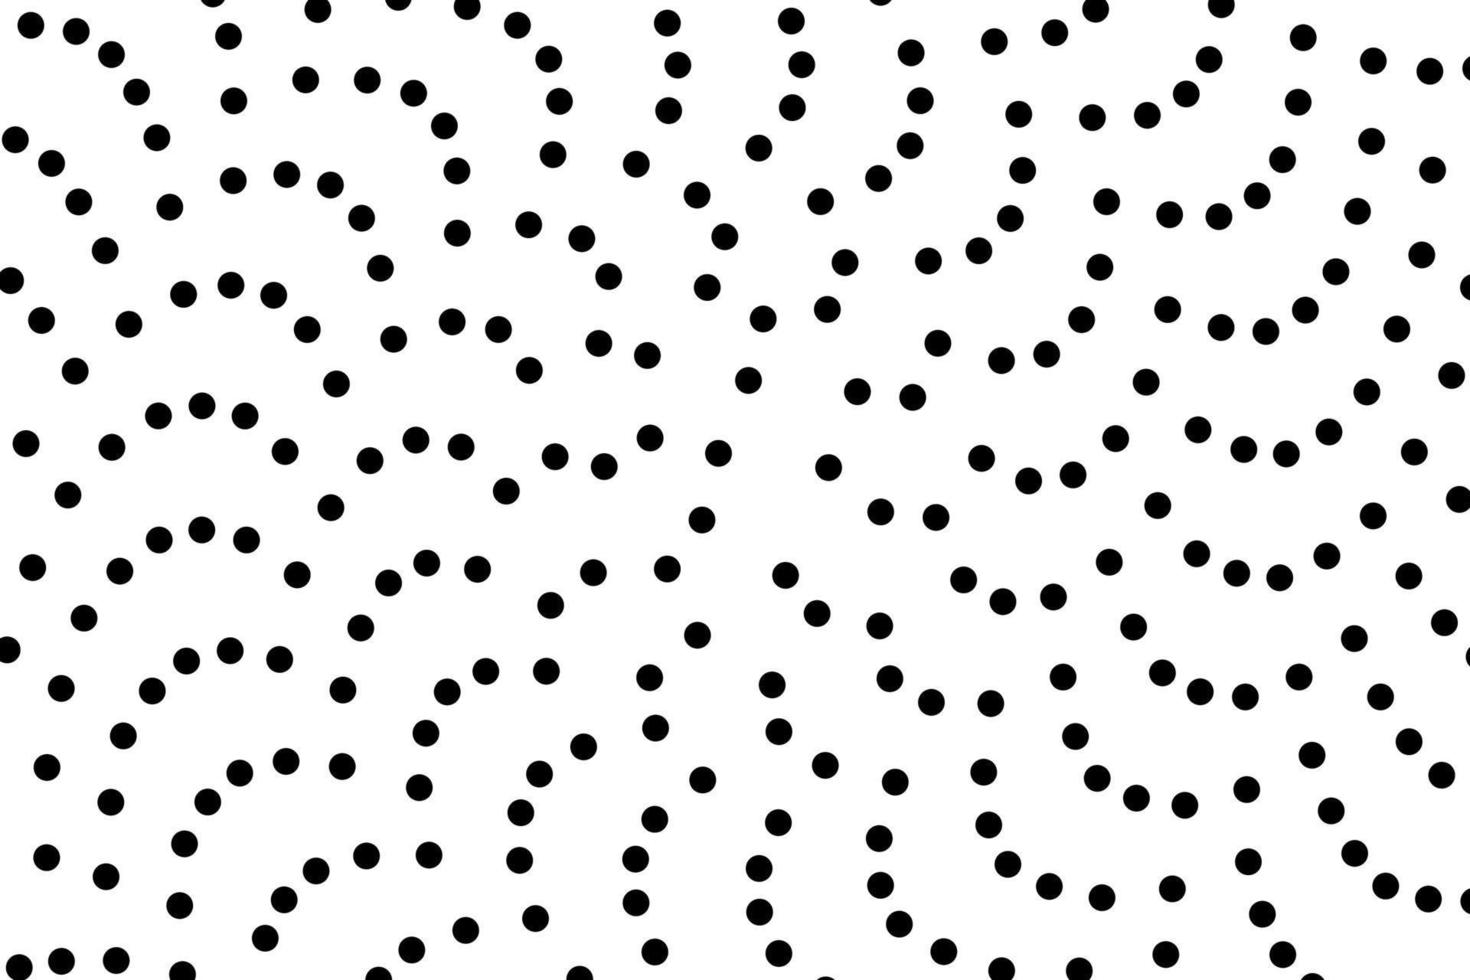 ramdon mönster av svart prickar på vit bakgrund vektor